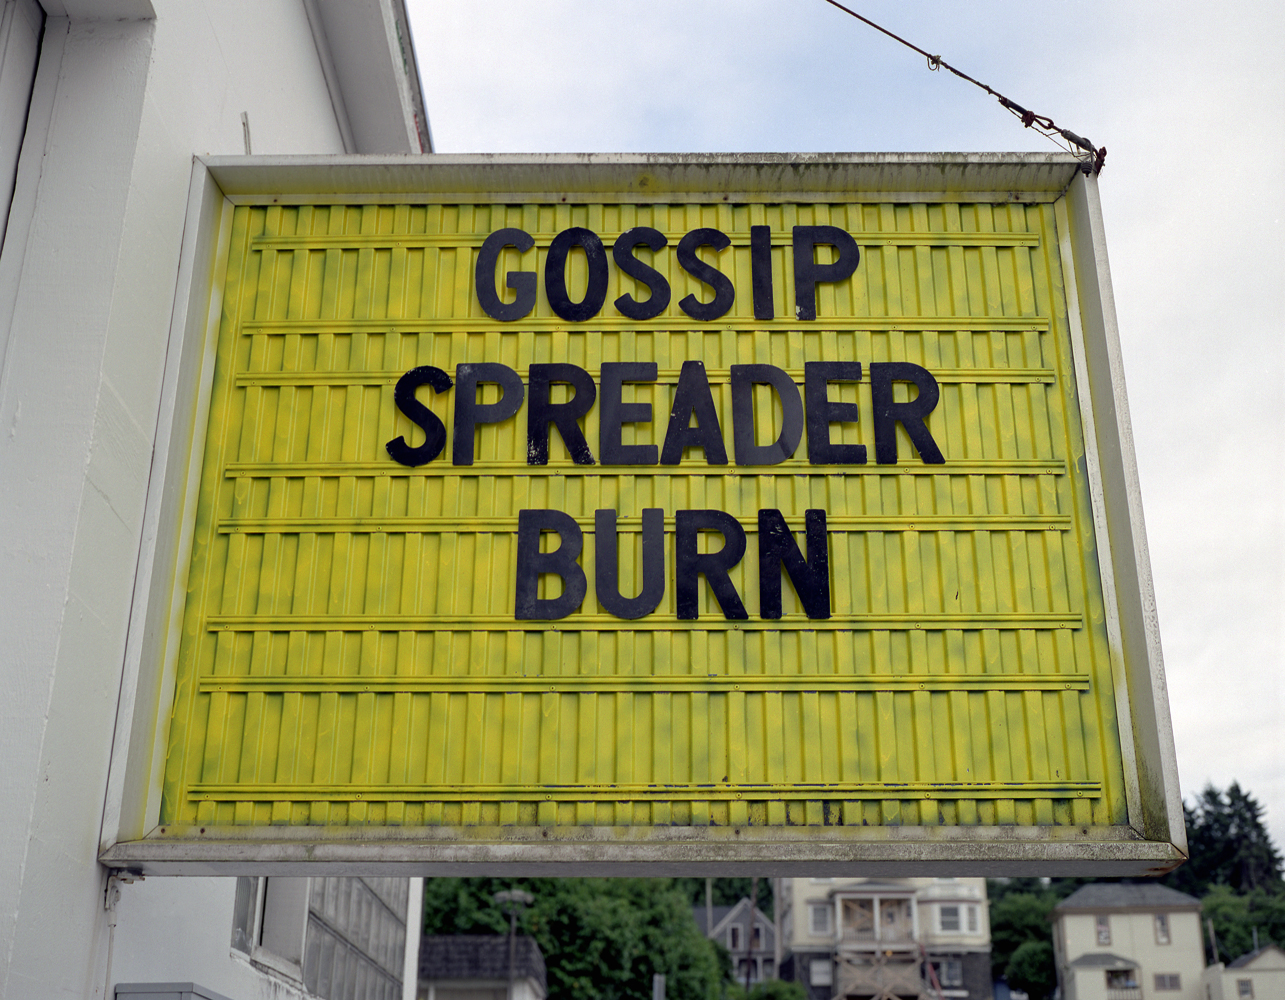 Gossip Spreader Burn 